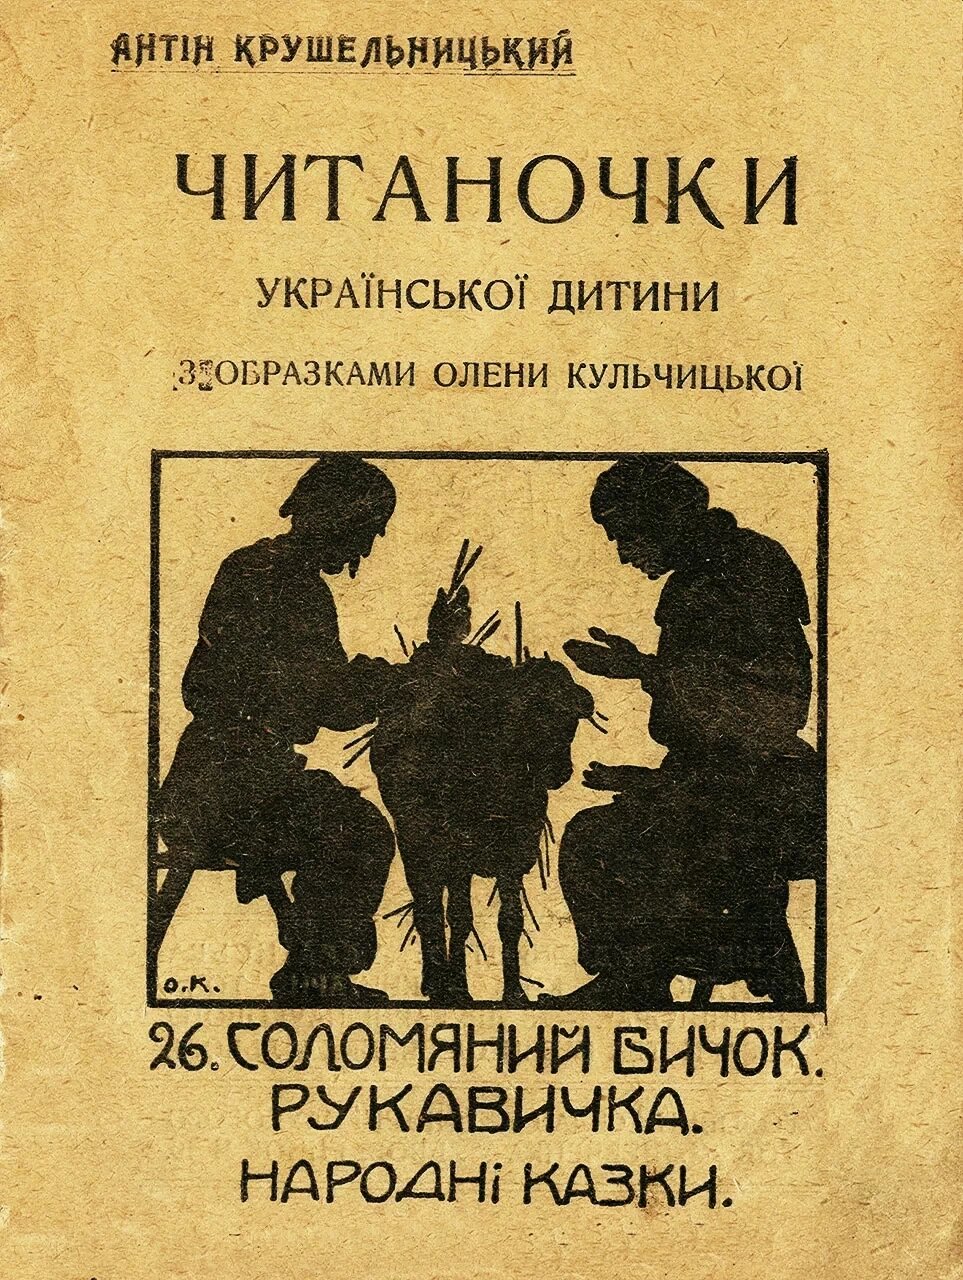 Титульна сторінка книжки “ІЧитаночкни” Антіна Крушельницького, 1922 р.